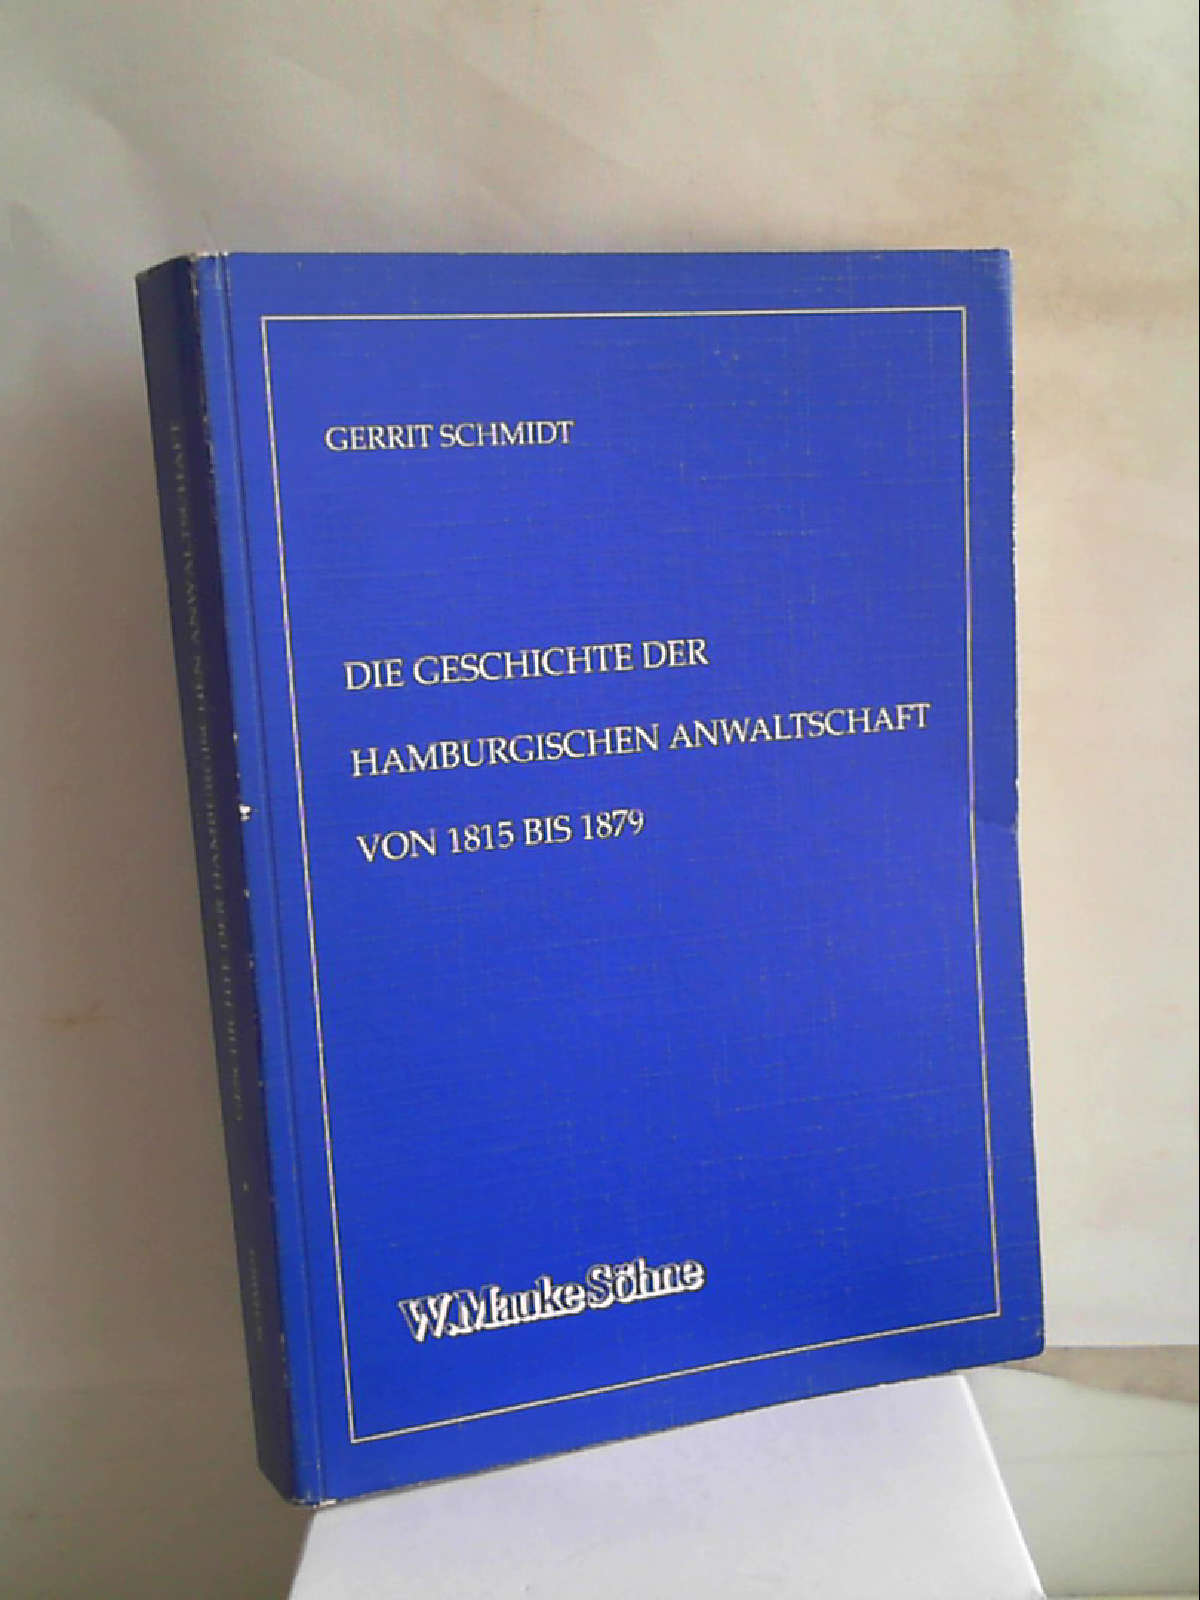 Die Geschichte der Hamburgischen Anwaltschaft von 1815 bis 1879